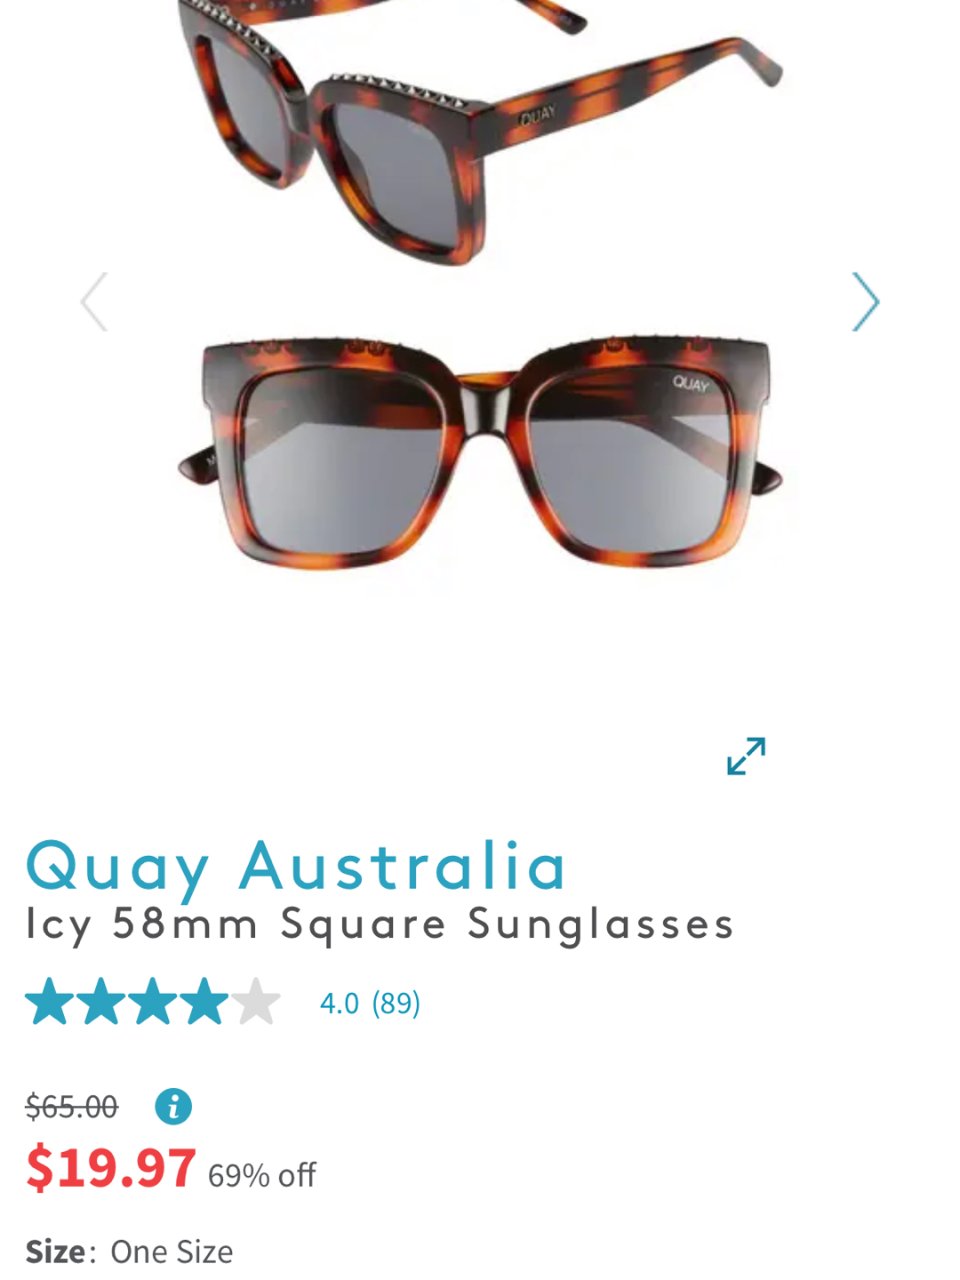 有和我一样喜欢Quay Australi...